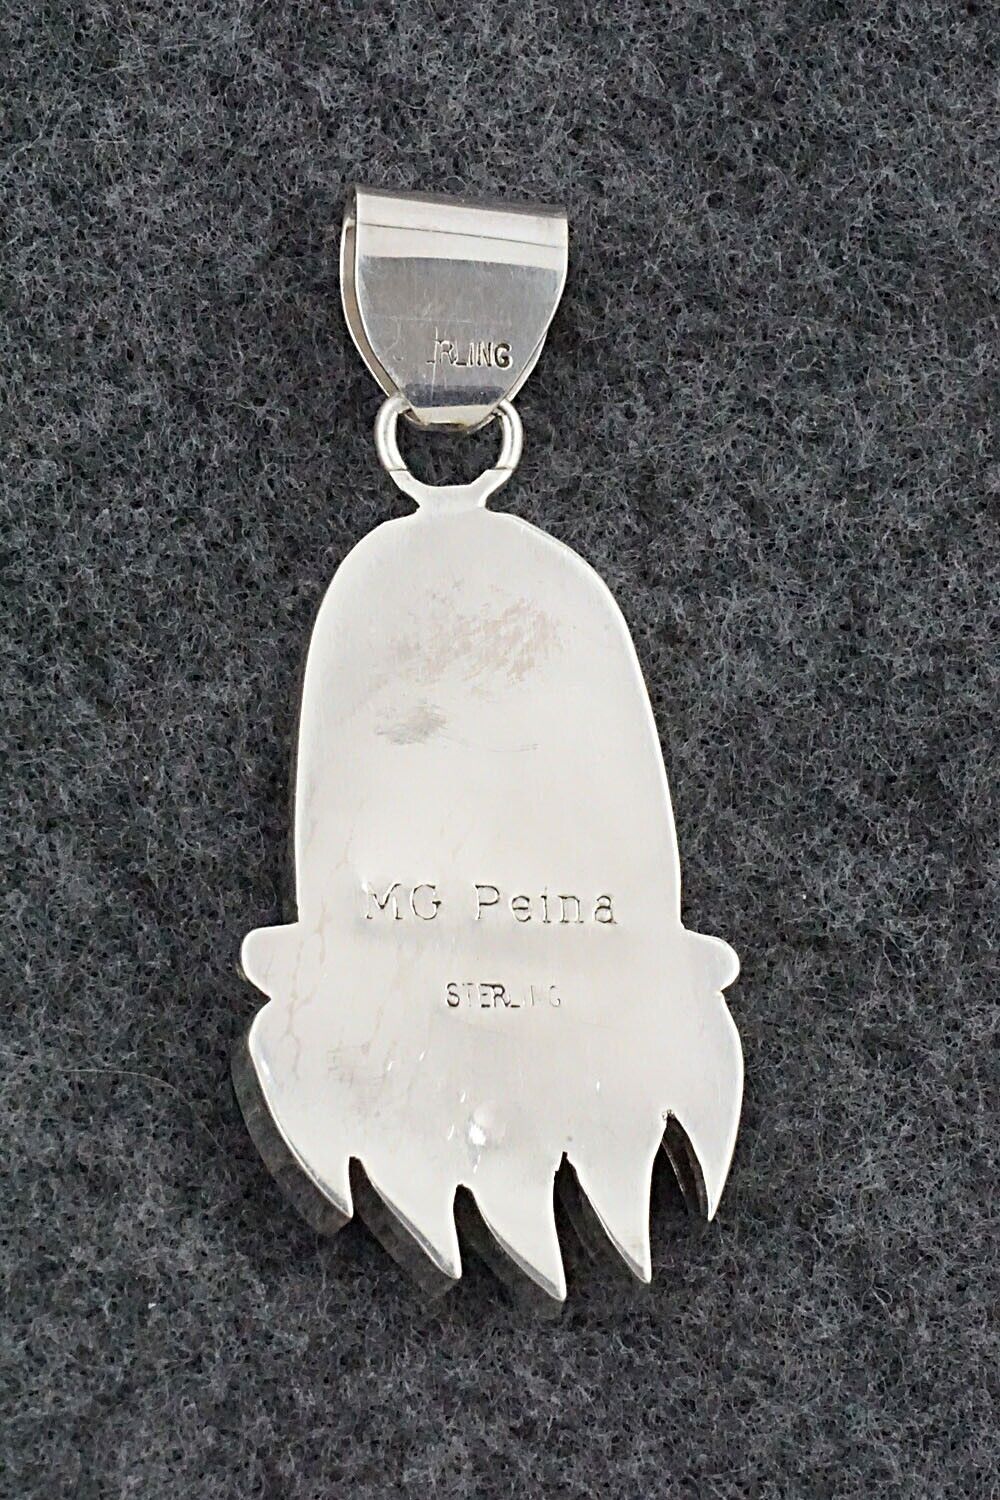 Multi-Stone & Sterling Silver Pendant - Michelle Peina